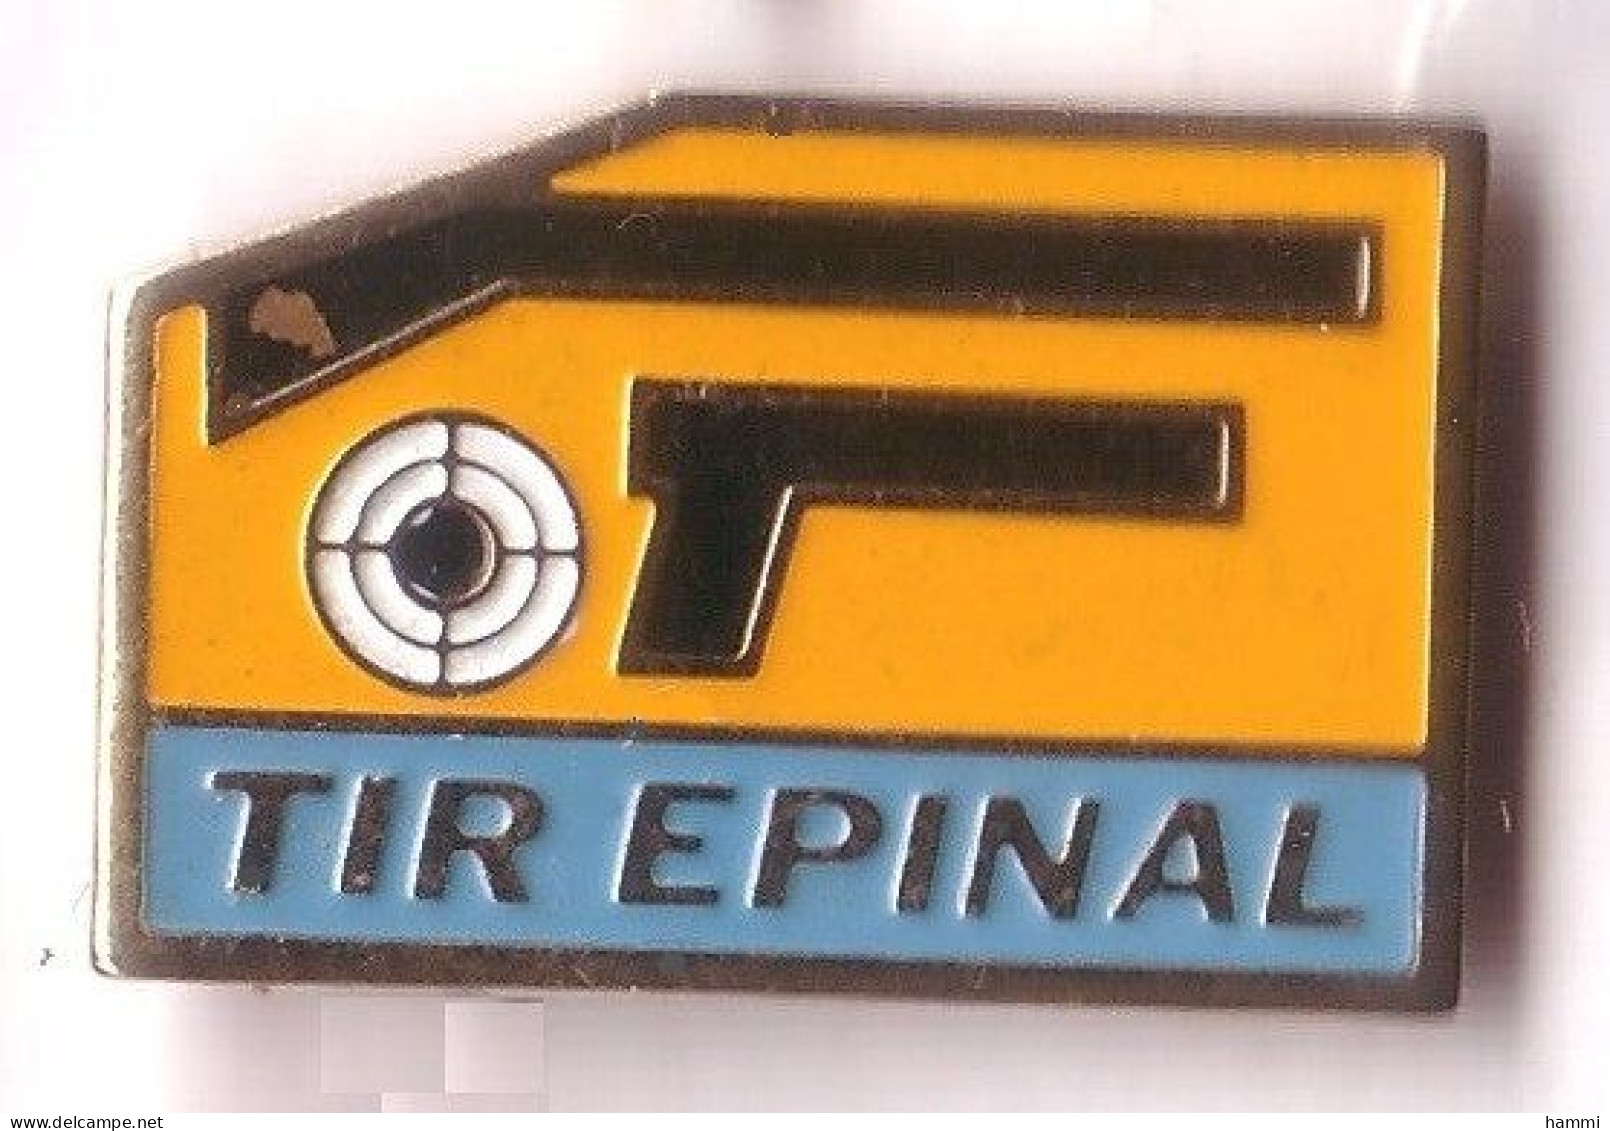 AA196 Pin's TIR Pistolet Carabine COMPÉTITION CLUB Épinal VOSGES Arme Carabine Pistolet Achat Immédiat - Archery